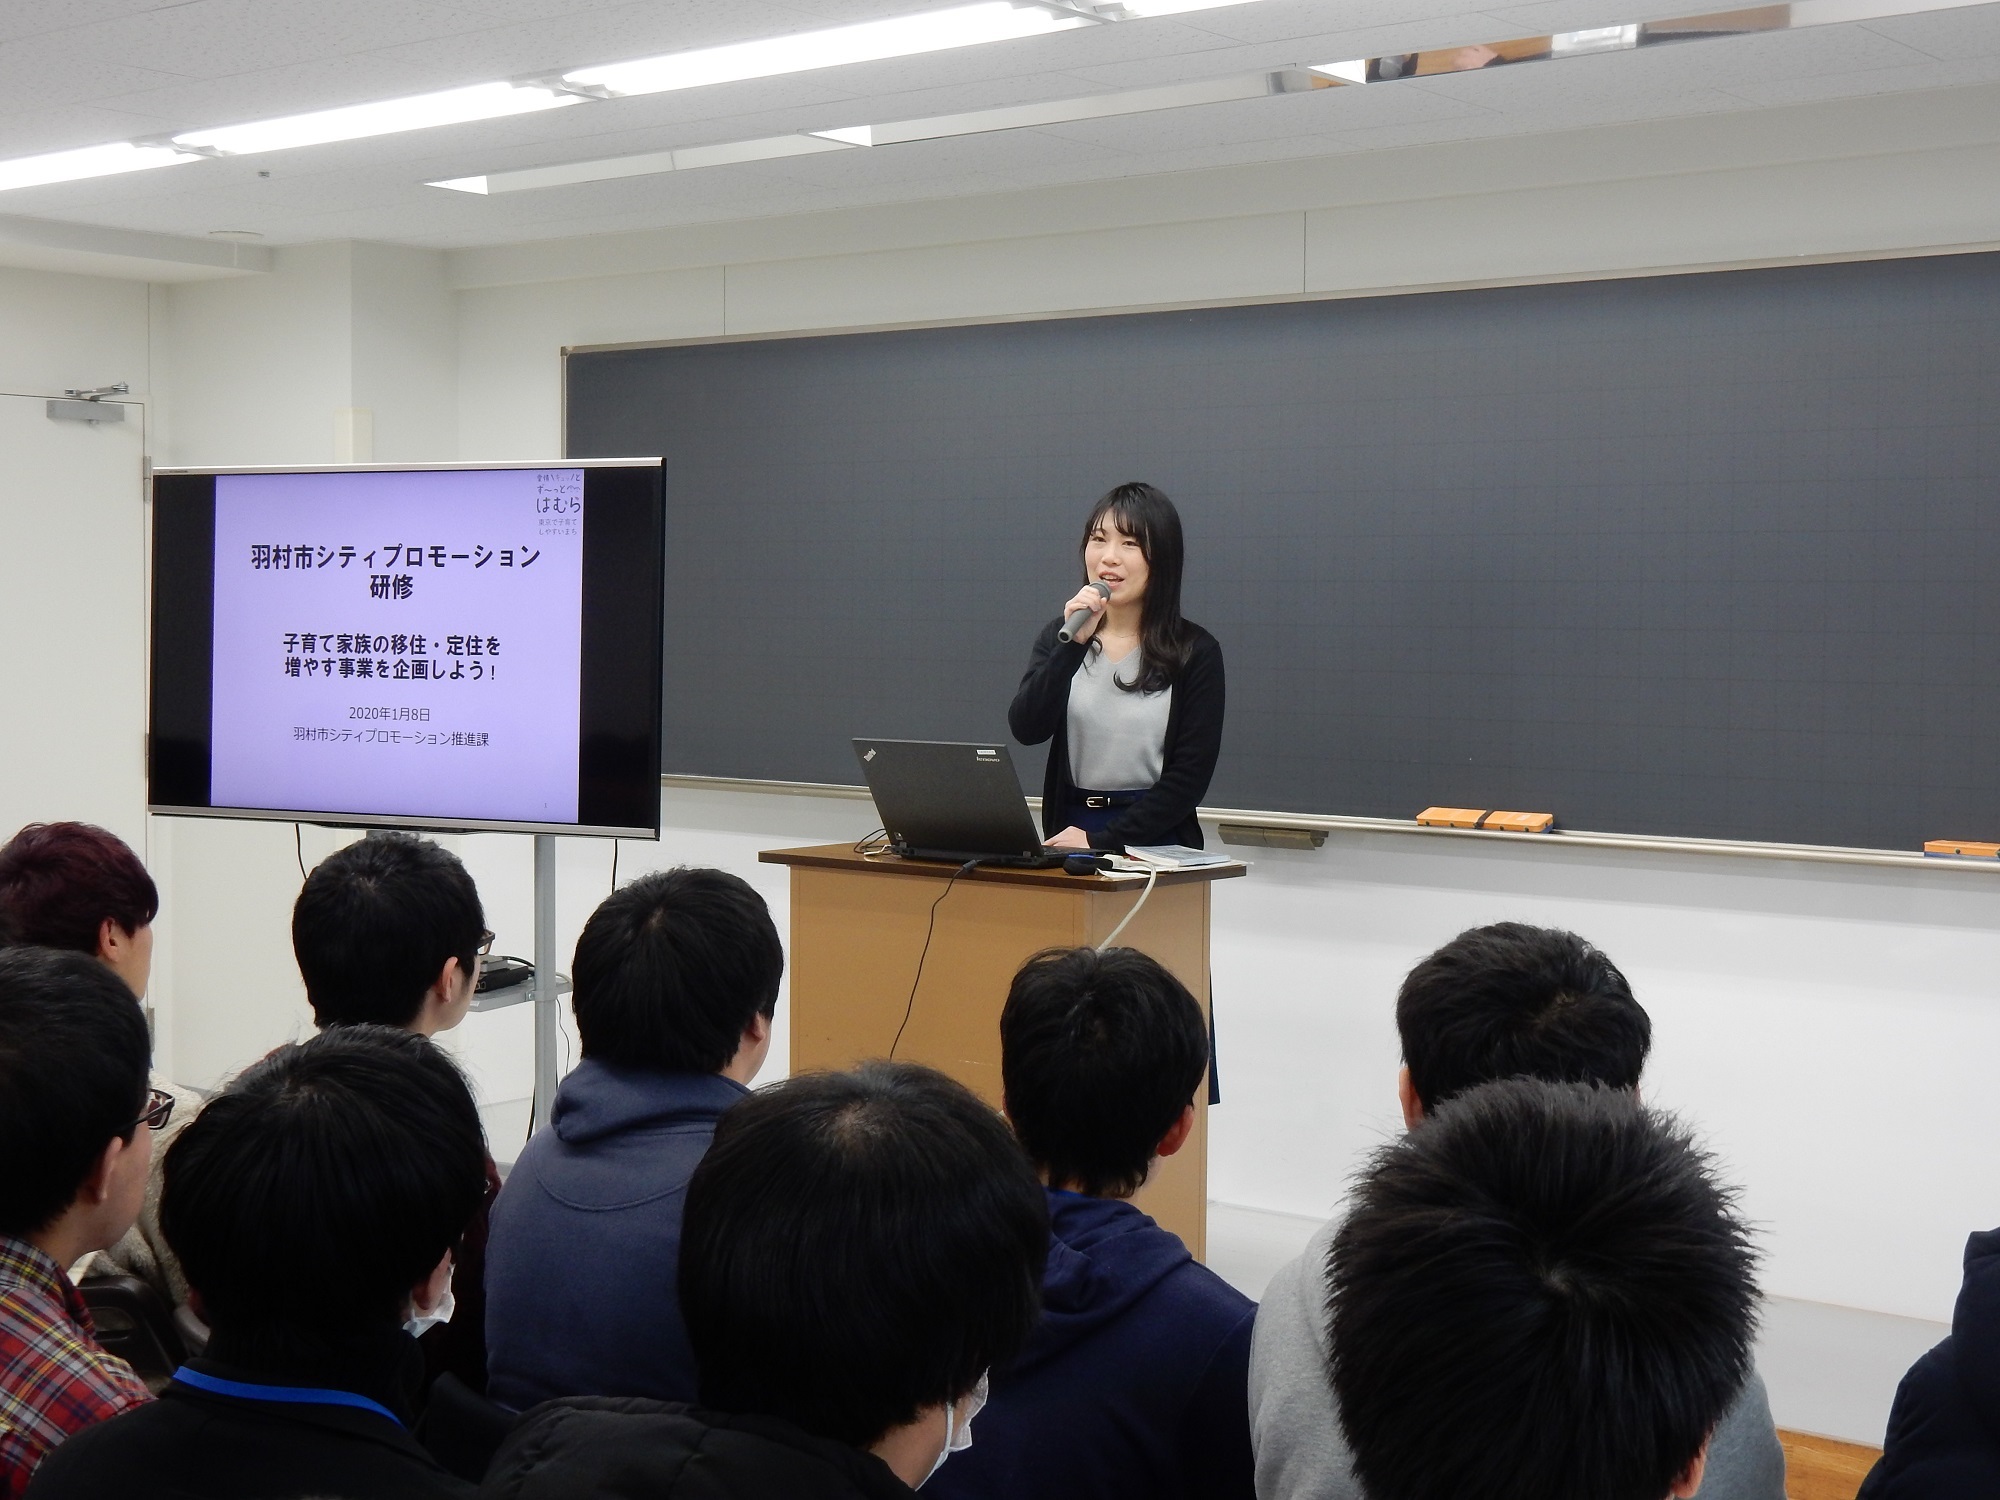 大原学園立川校でシティプロモーション事業を企画する授業を行いました 羽村市公式サイト